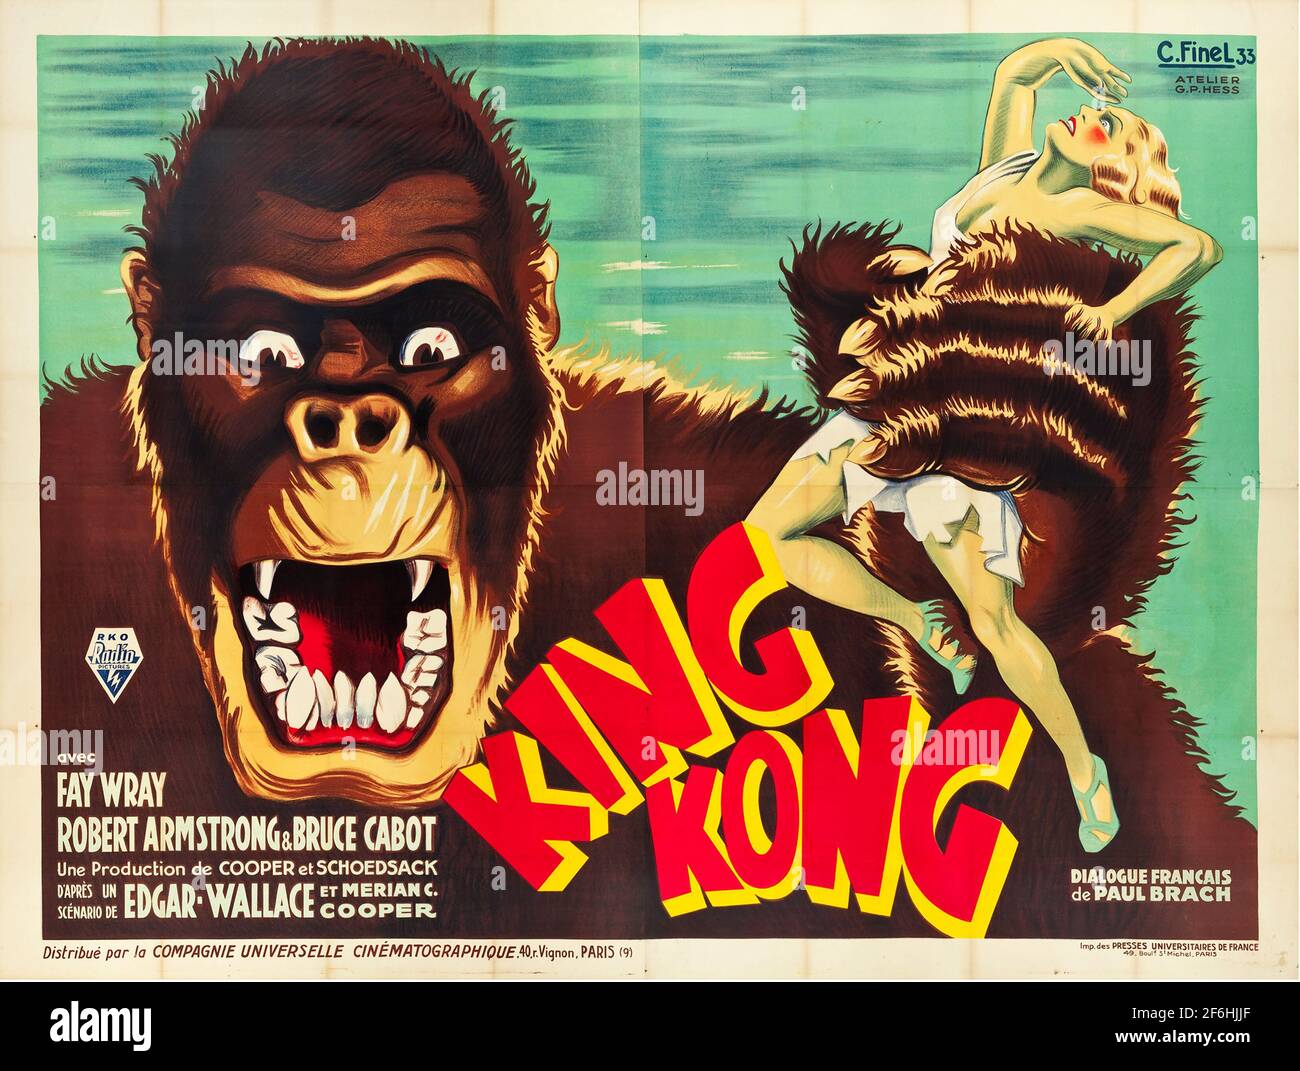 King Kong, cartel de cine 1933. Con Fay Wray, Bruce Cabot, Robert Armstrong, Frank Ward. Aventura / Fantasía / Acción / Romance. Foto de stock